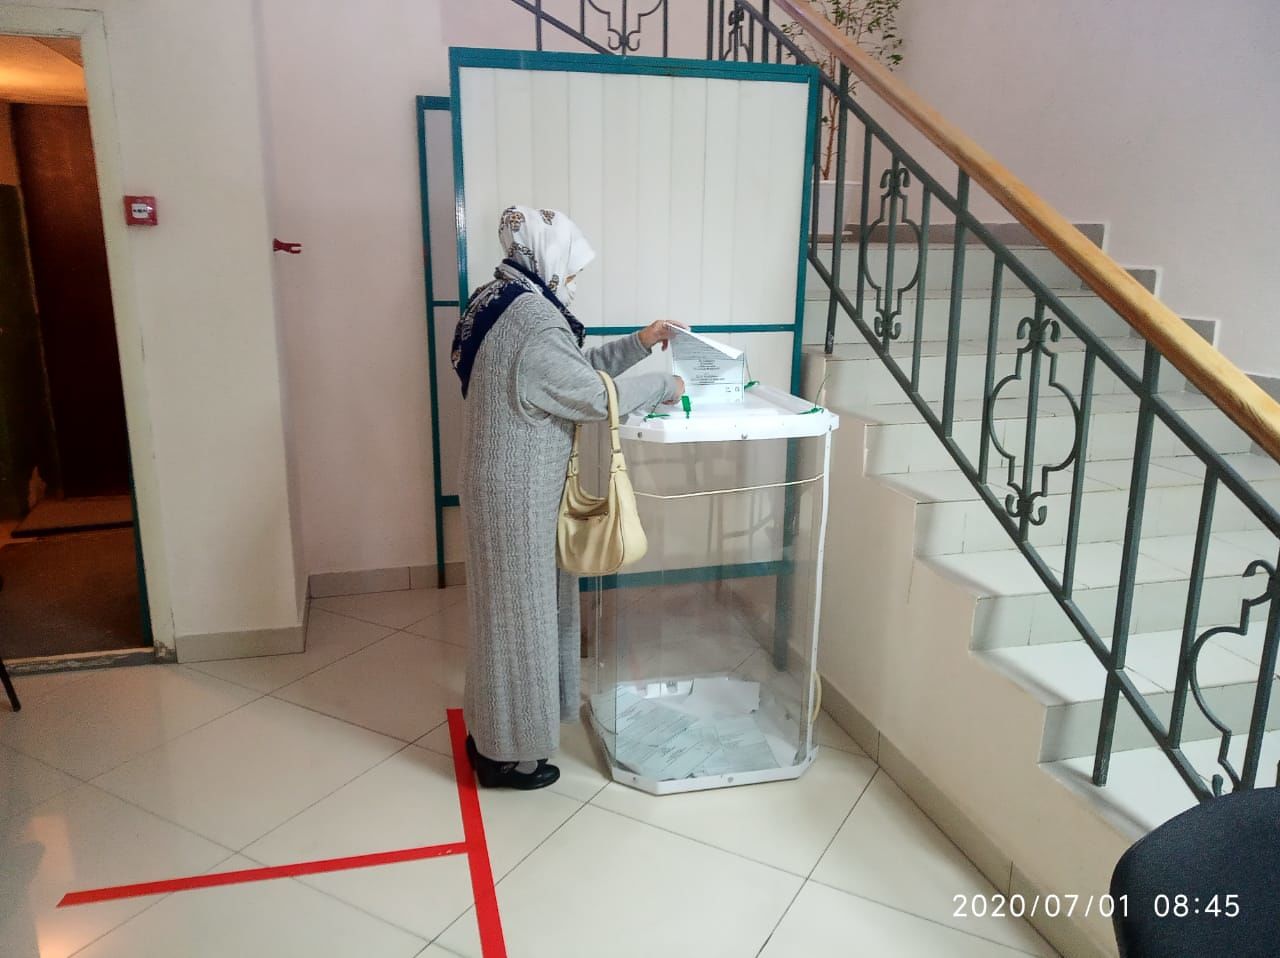 Супружеская пара Мингалиевых - уважаемых в Рыбно-Слободском районе людей, пришла на голосование в праздничном одеянии и с хорошим настроением